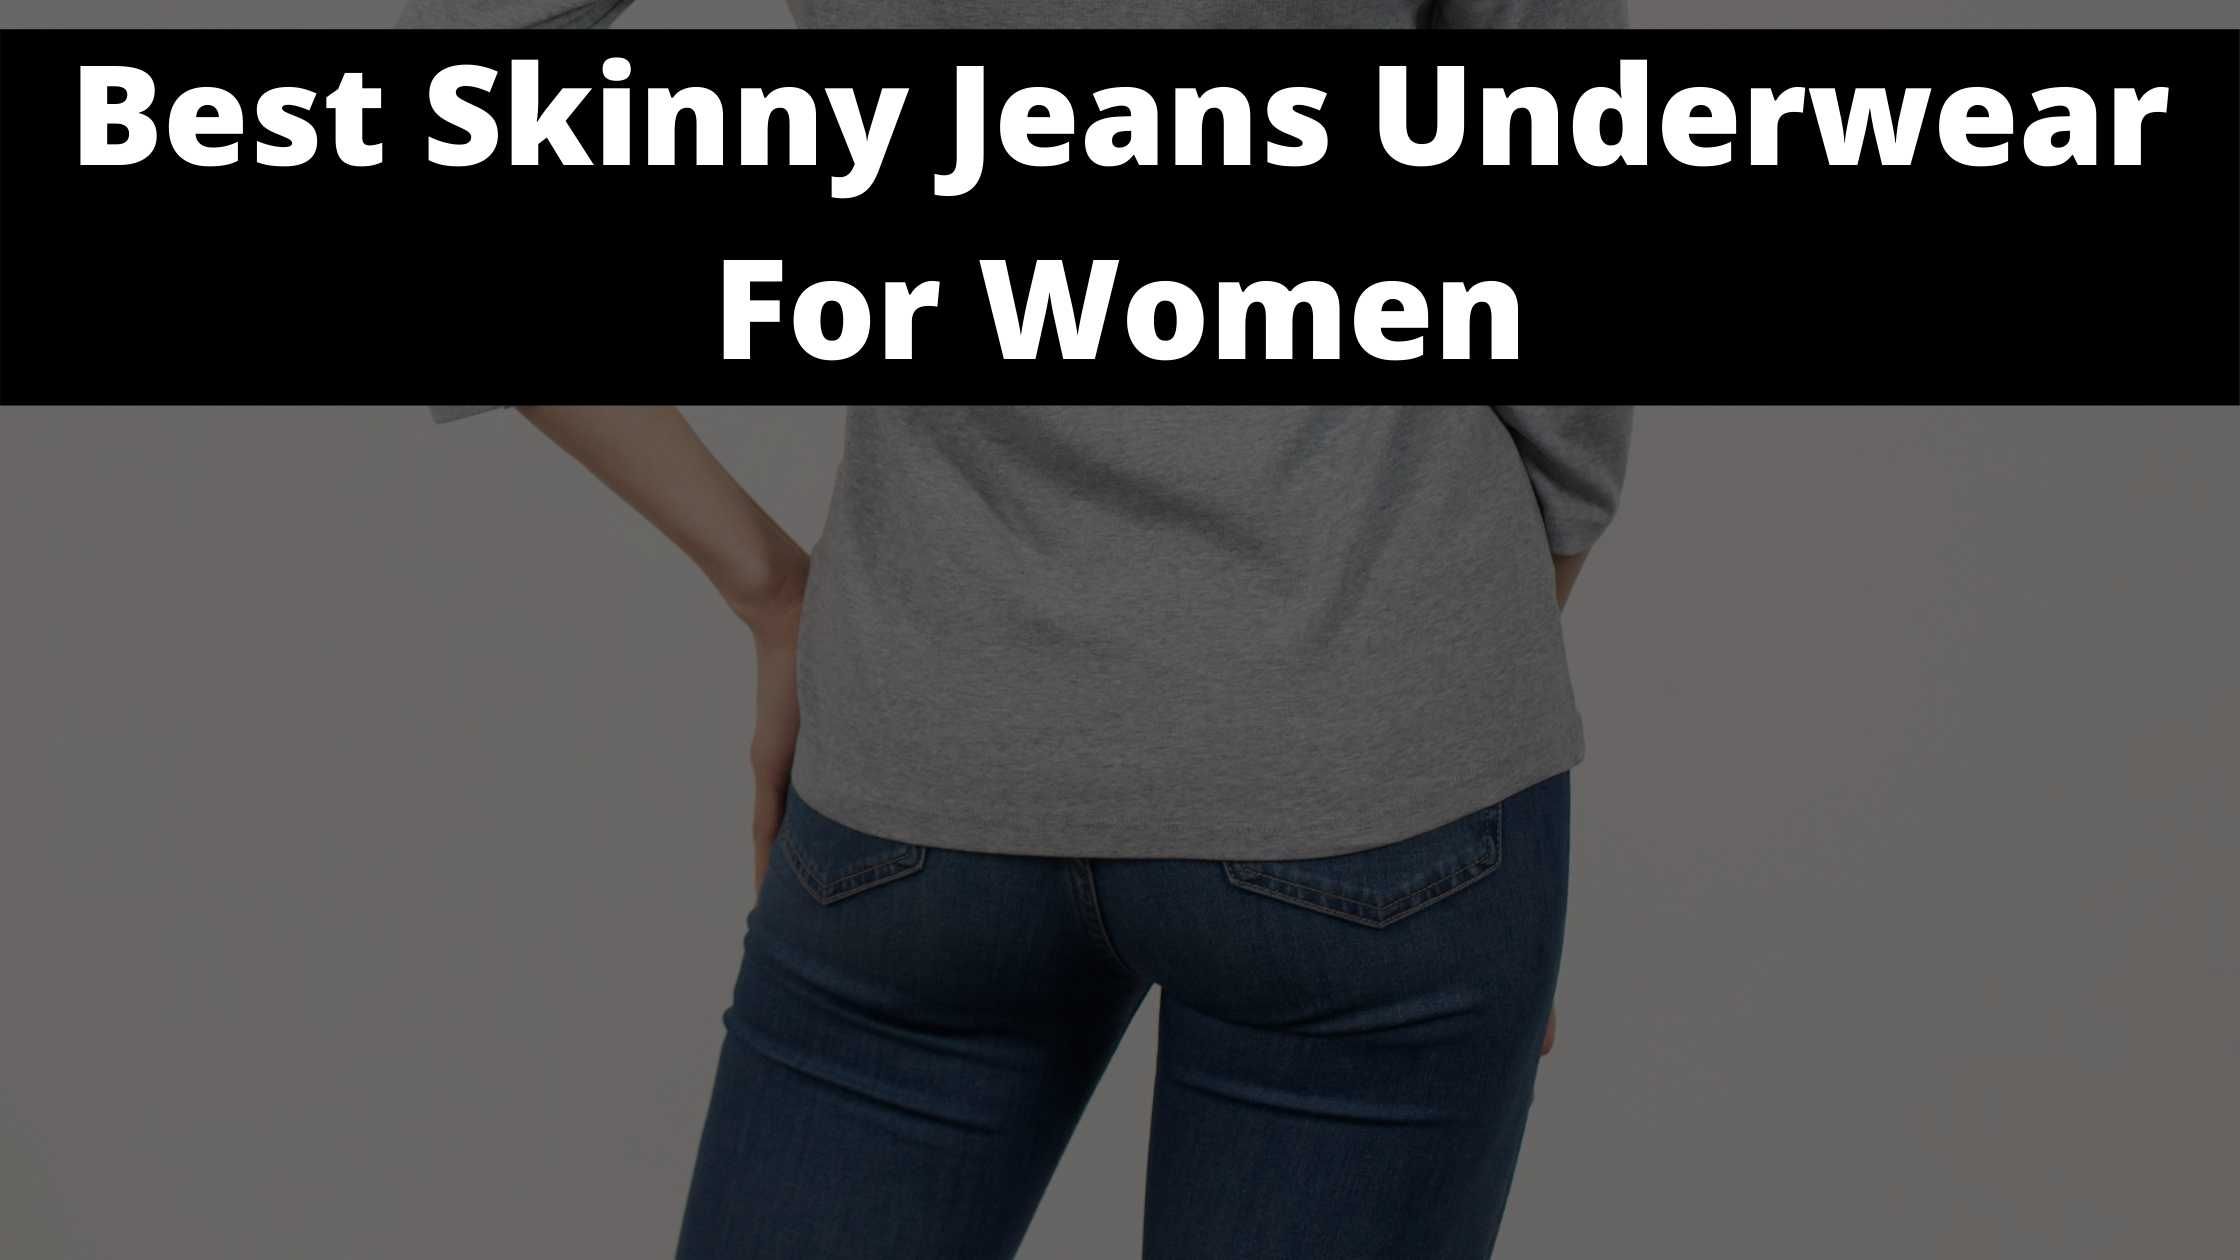 Best Skinny Jeans Underwear For Women